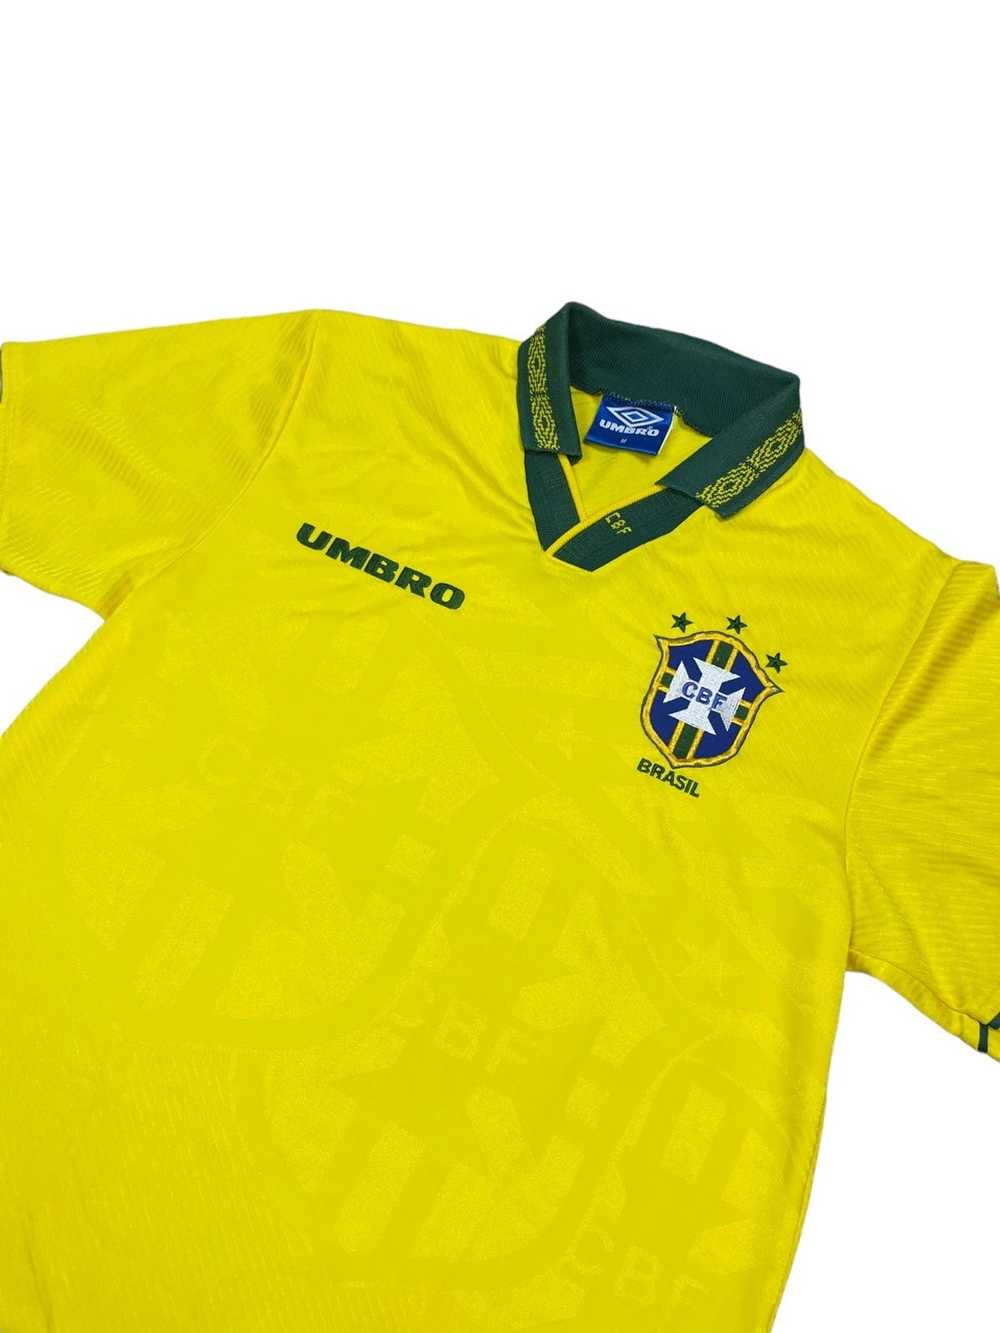 Soccer Jersey × Umbro × Vintage Vintage 90s 1994 … - image 2